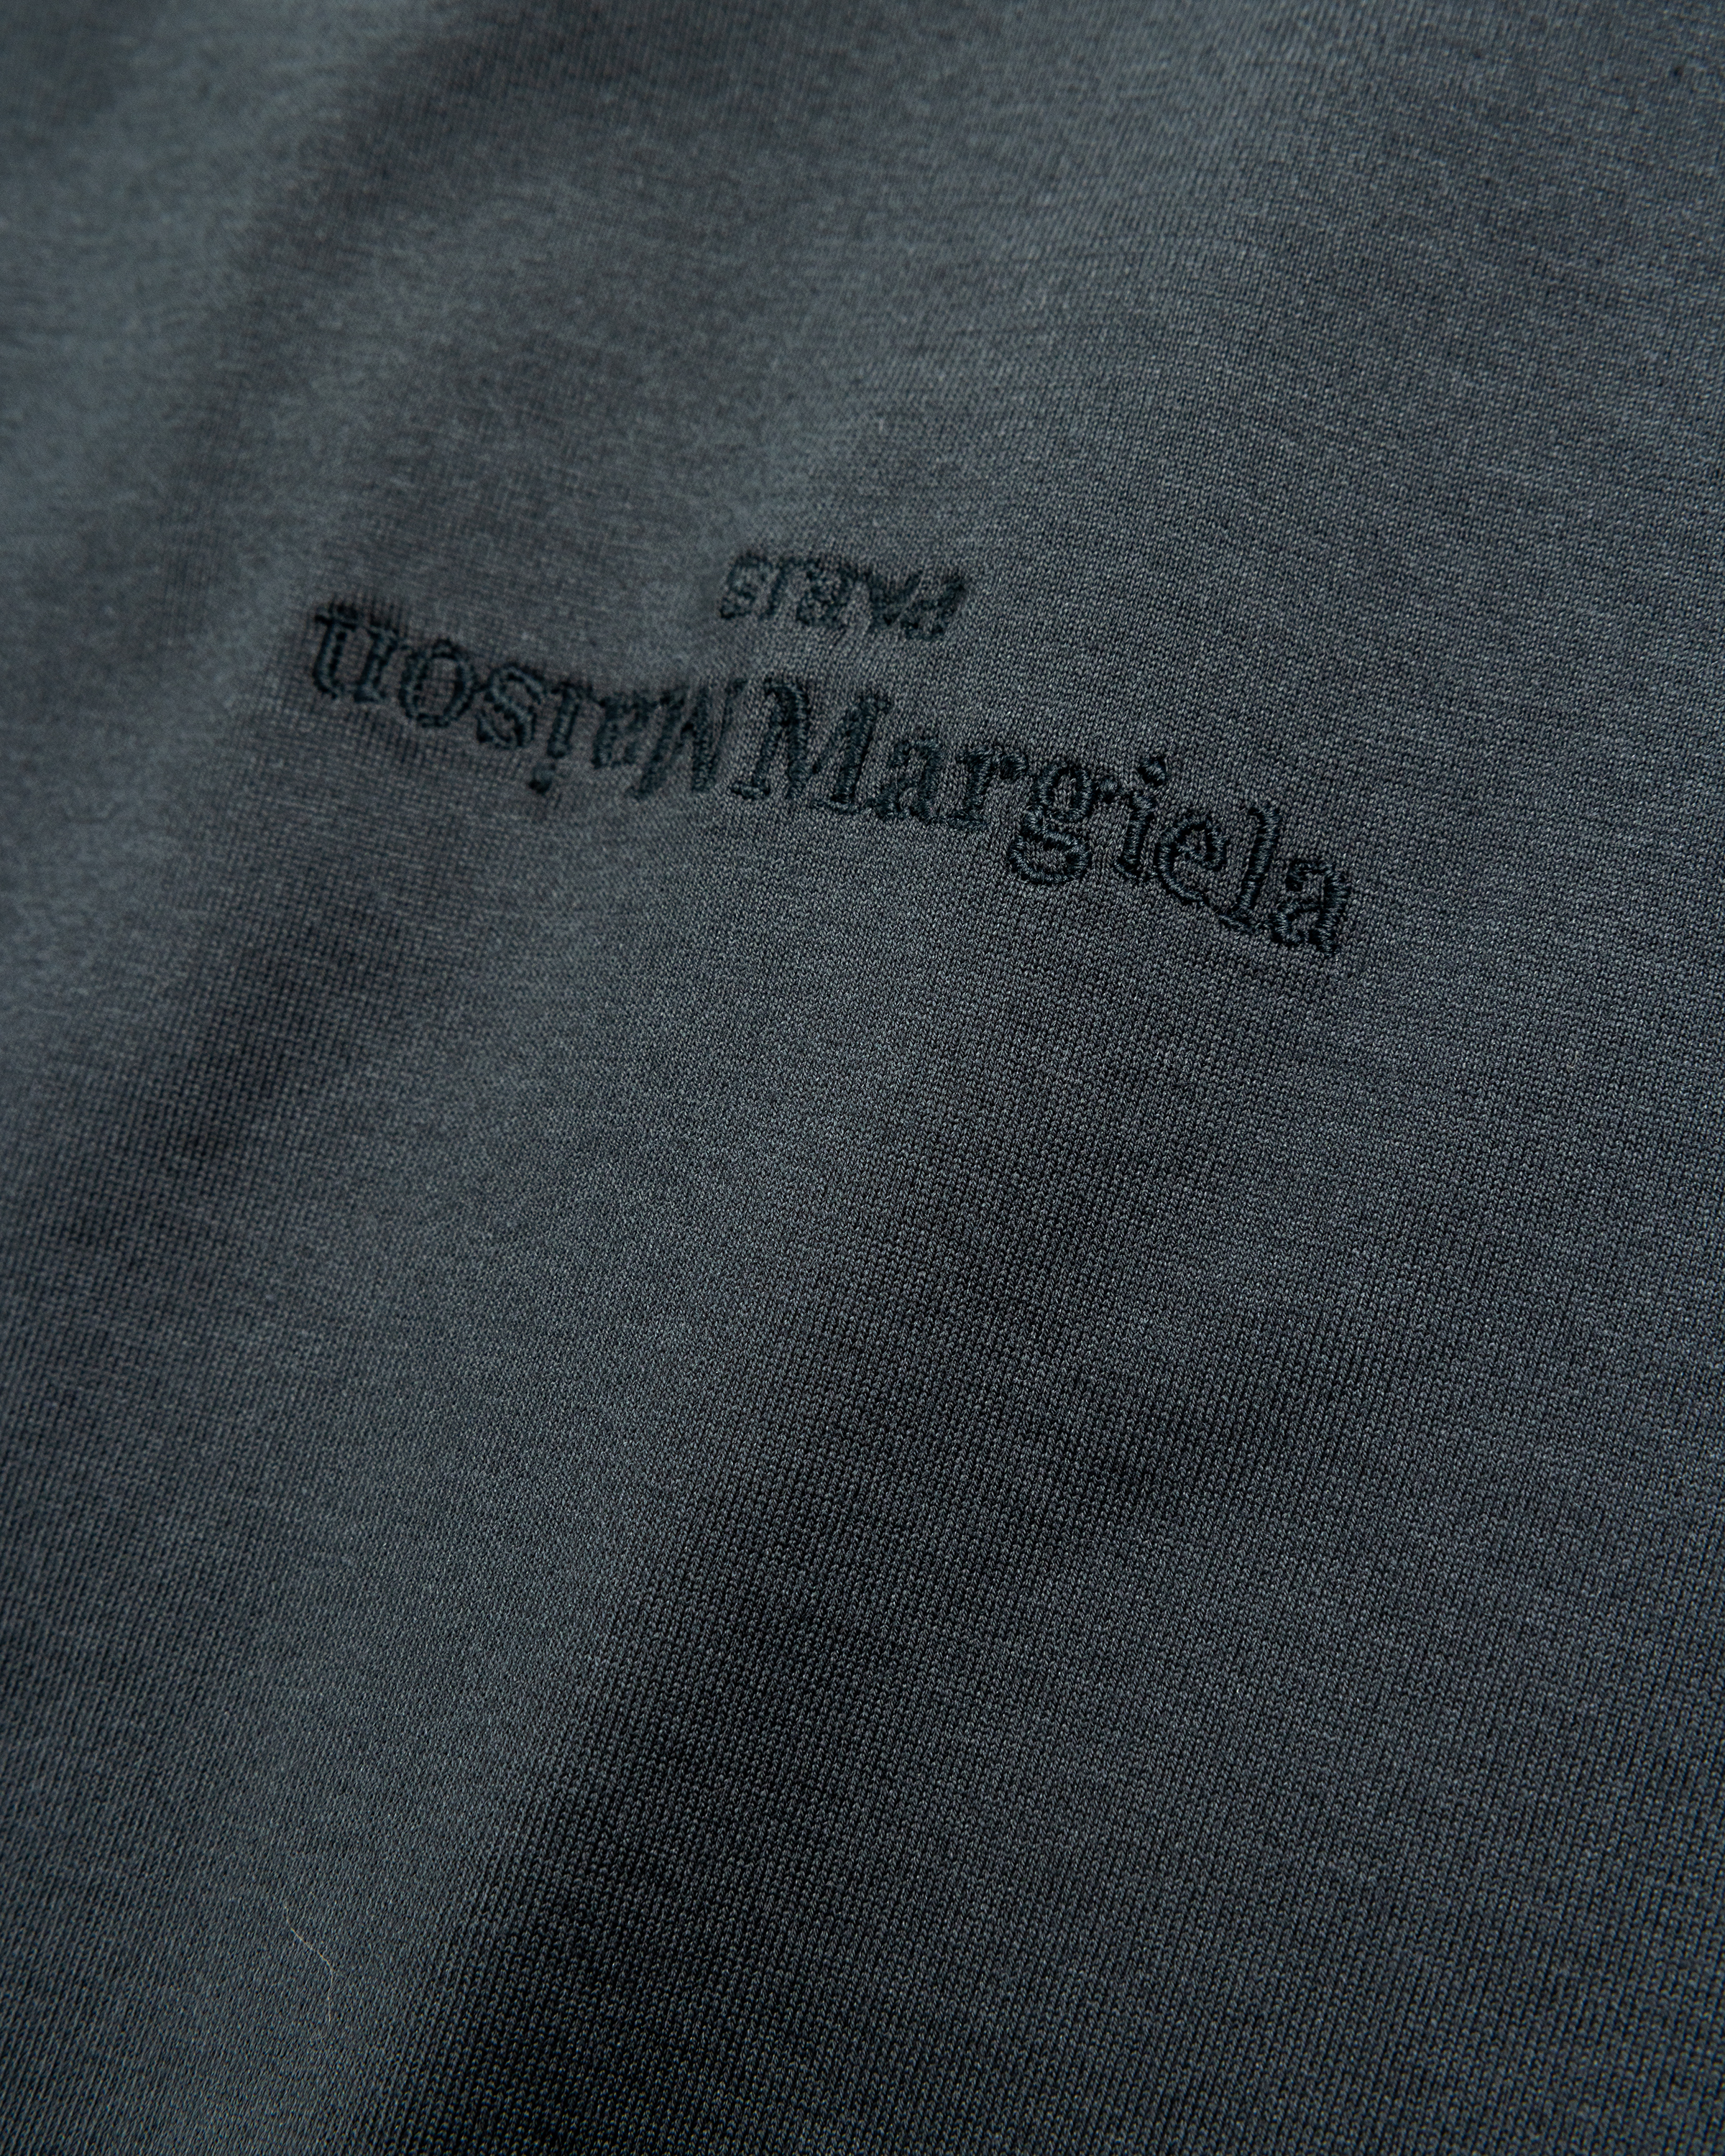 Maison Margiela – Distorted Logo T-Shirt Washed Black - Tops - Black - Image 7